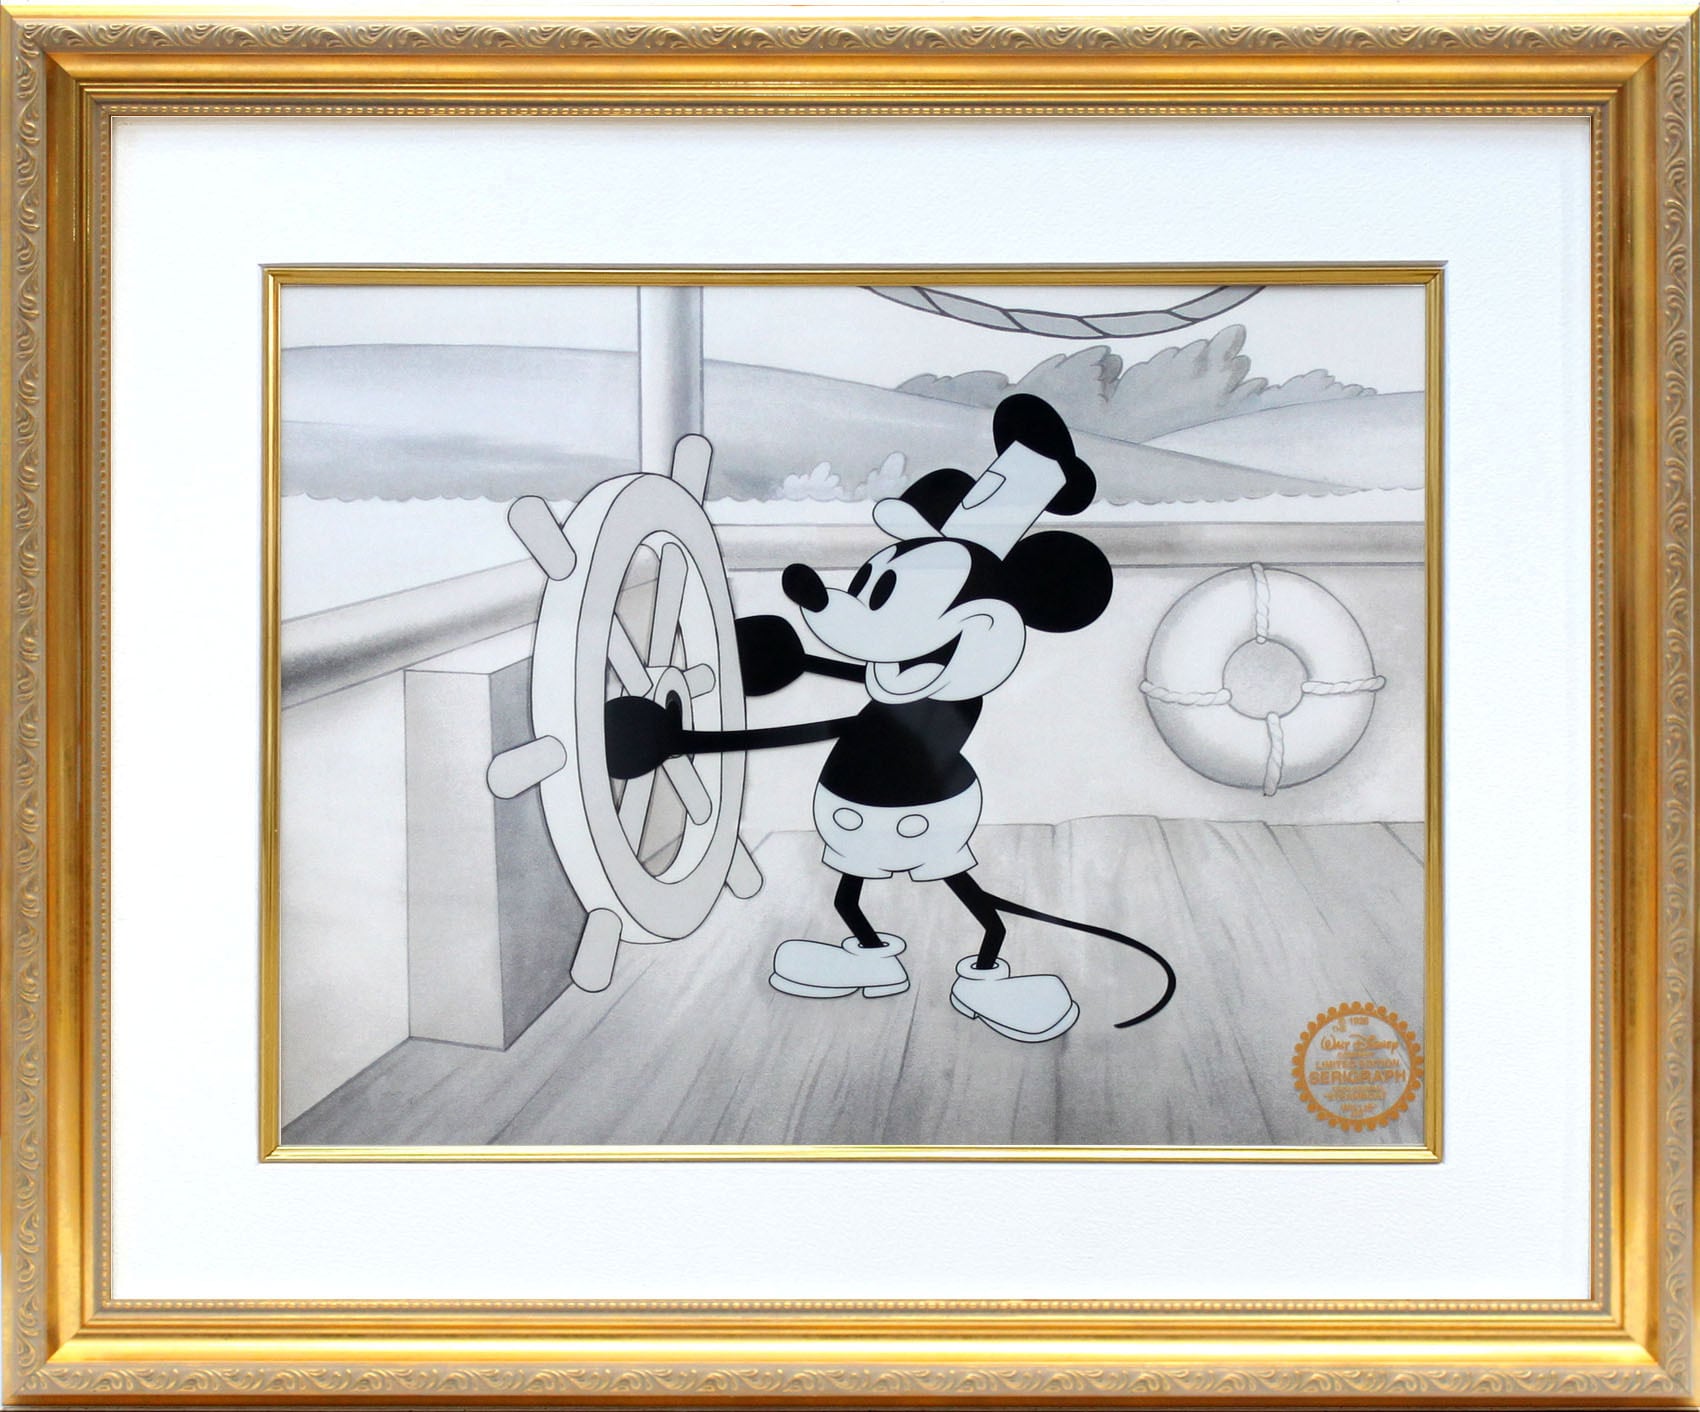 ディズニー・セル画「ミッキーマウス/蒸気船ウィリー」額縁2種選択可